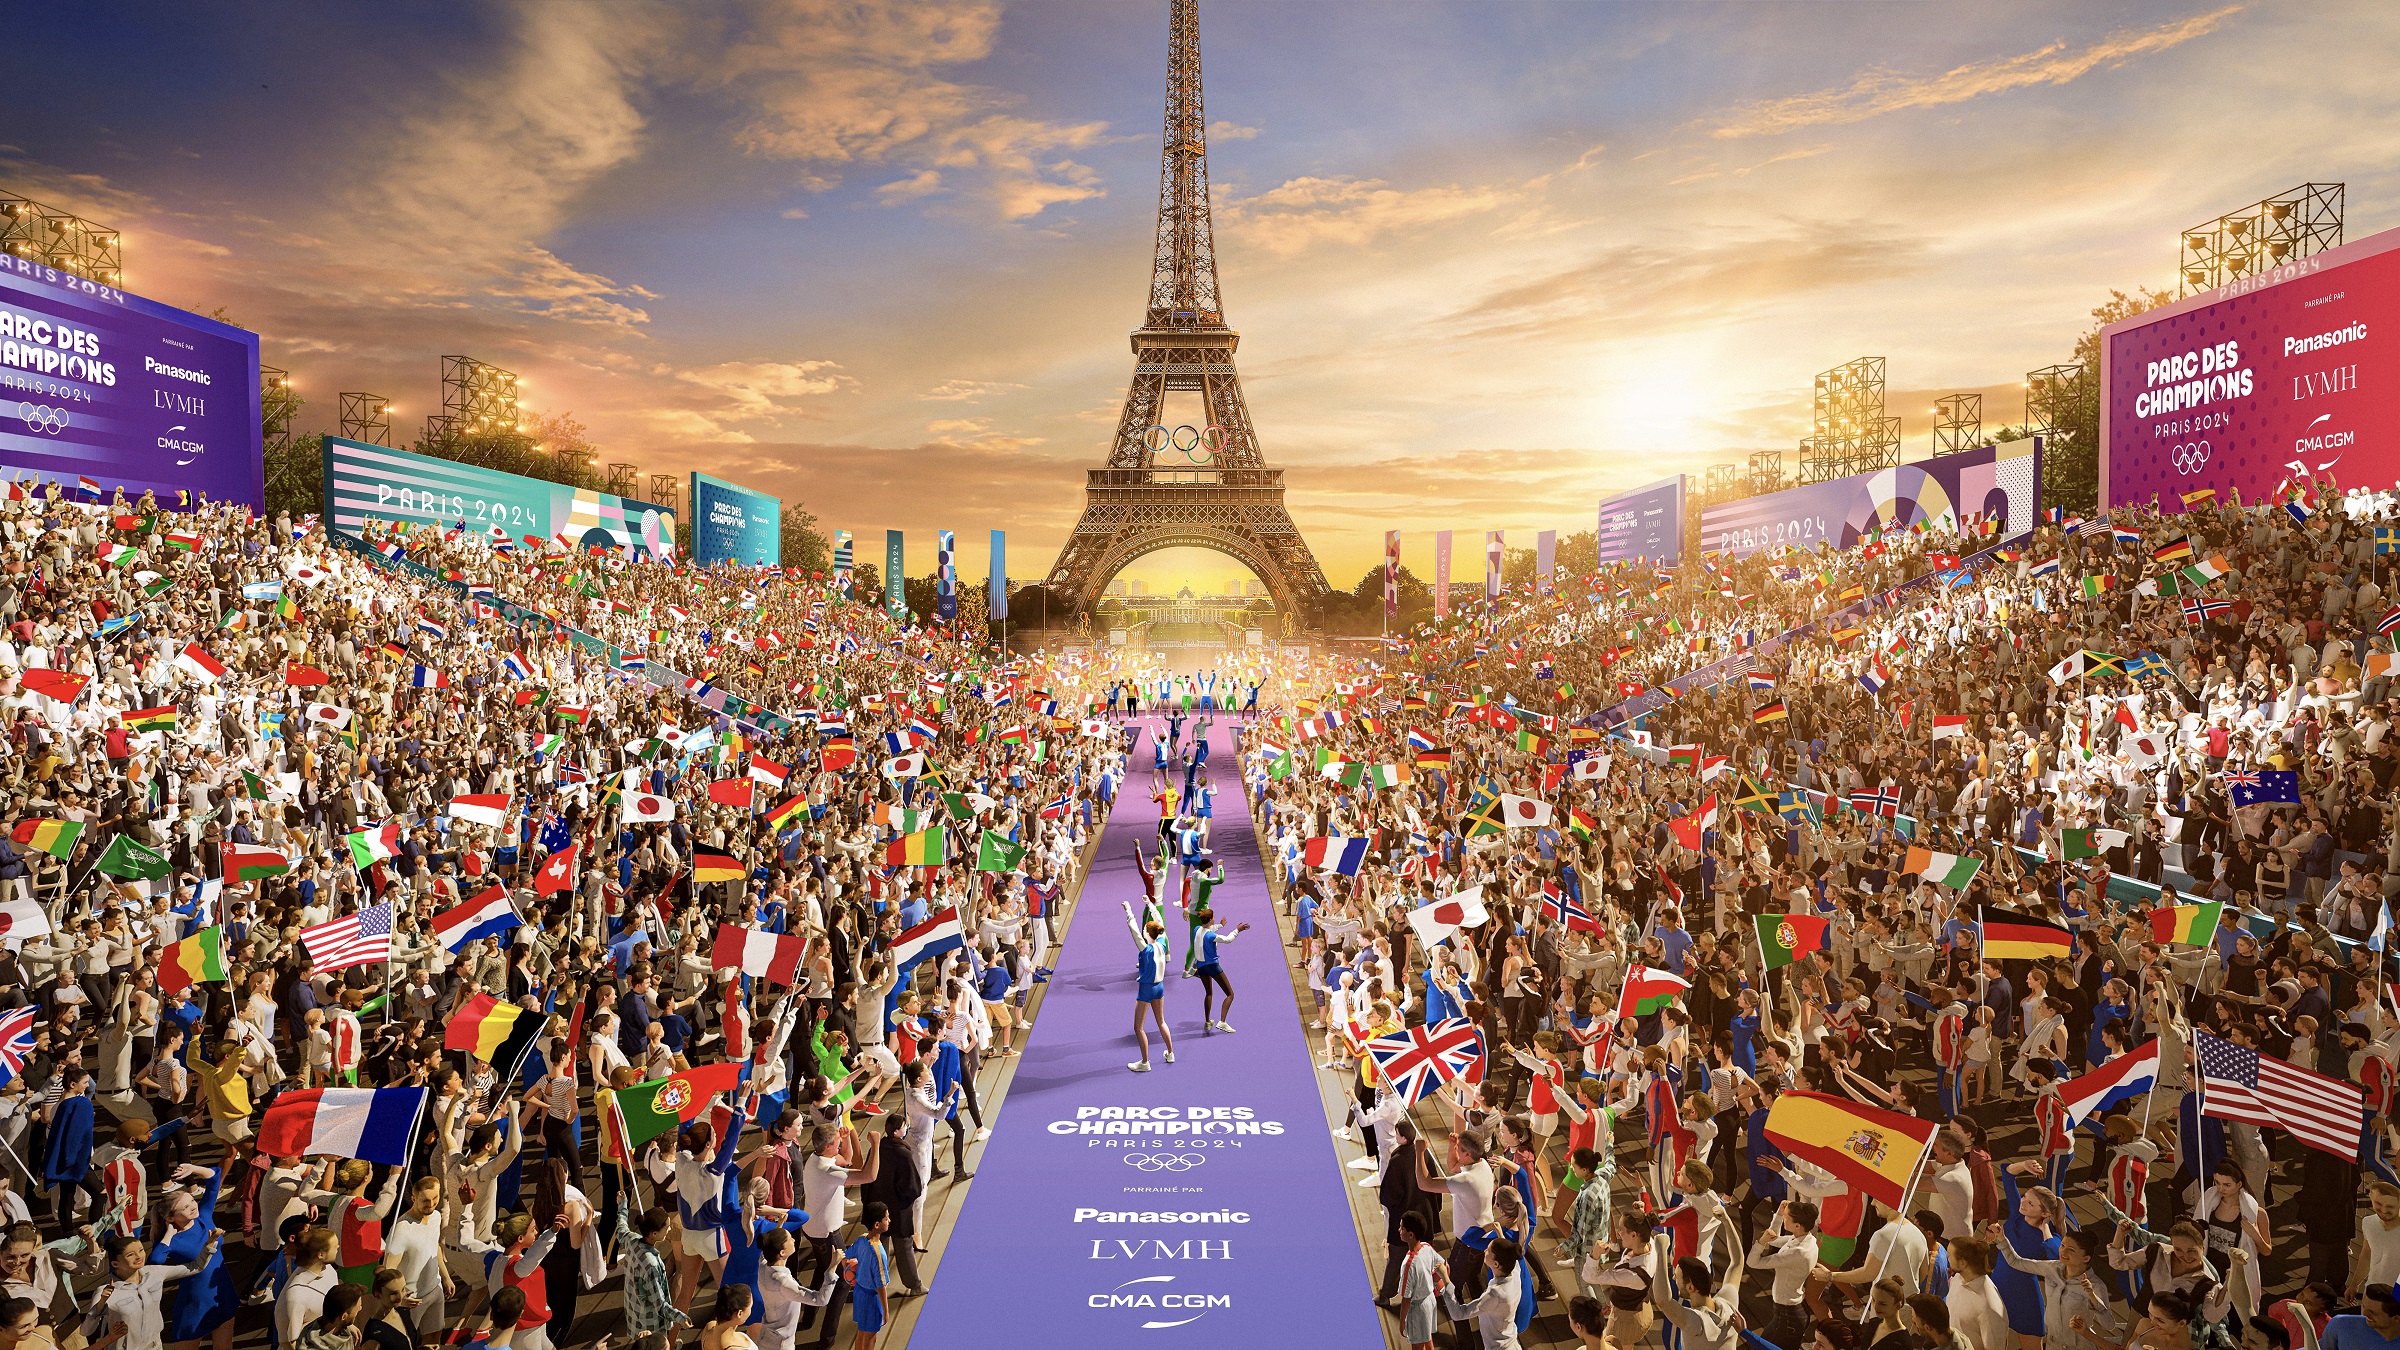 artist rendering of Olympic catwalk in Paris